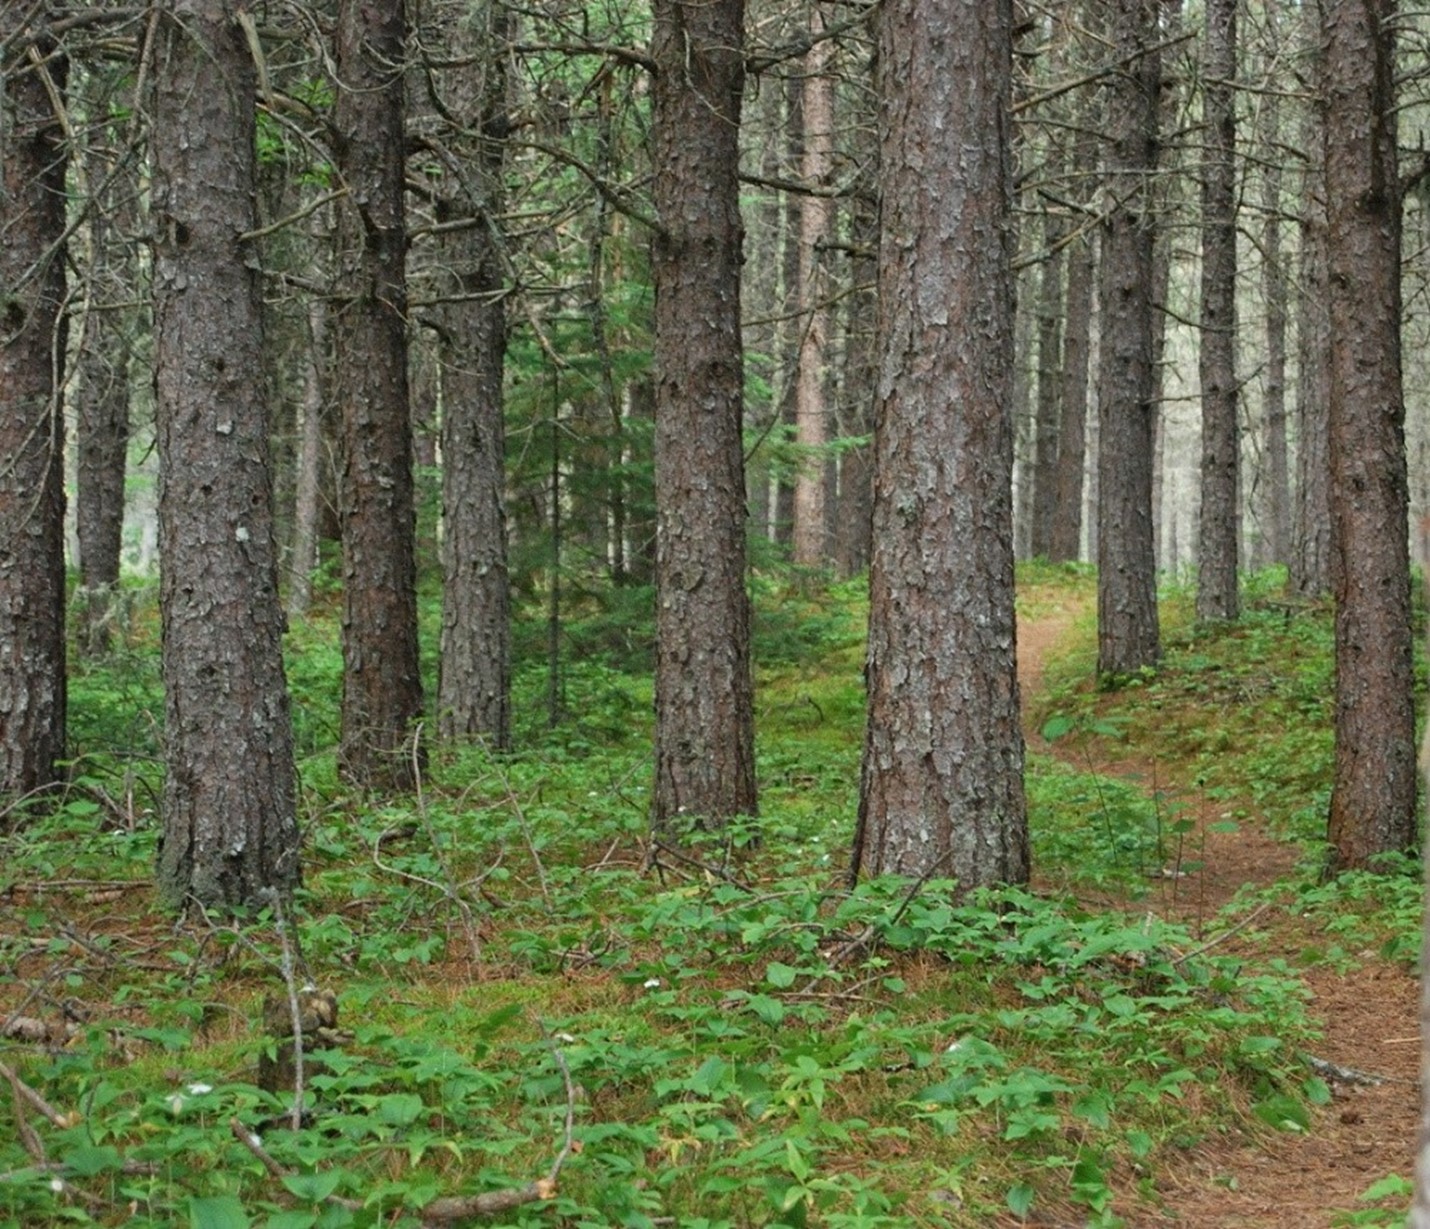 Grands troncs de pins rouges matures, plantés très près les uns des autres. Petites plantes vertes poussant autour de la base des troncs sur le sol forestier recouvert d’aiguilles de pin.